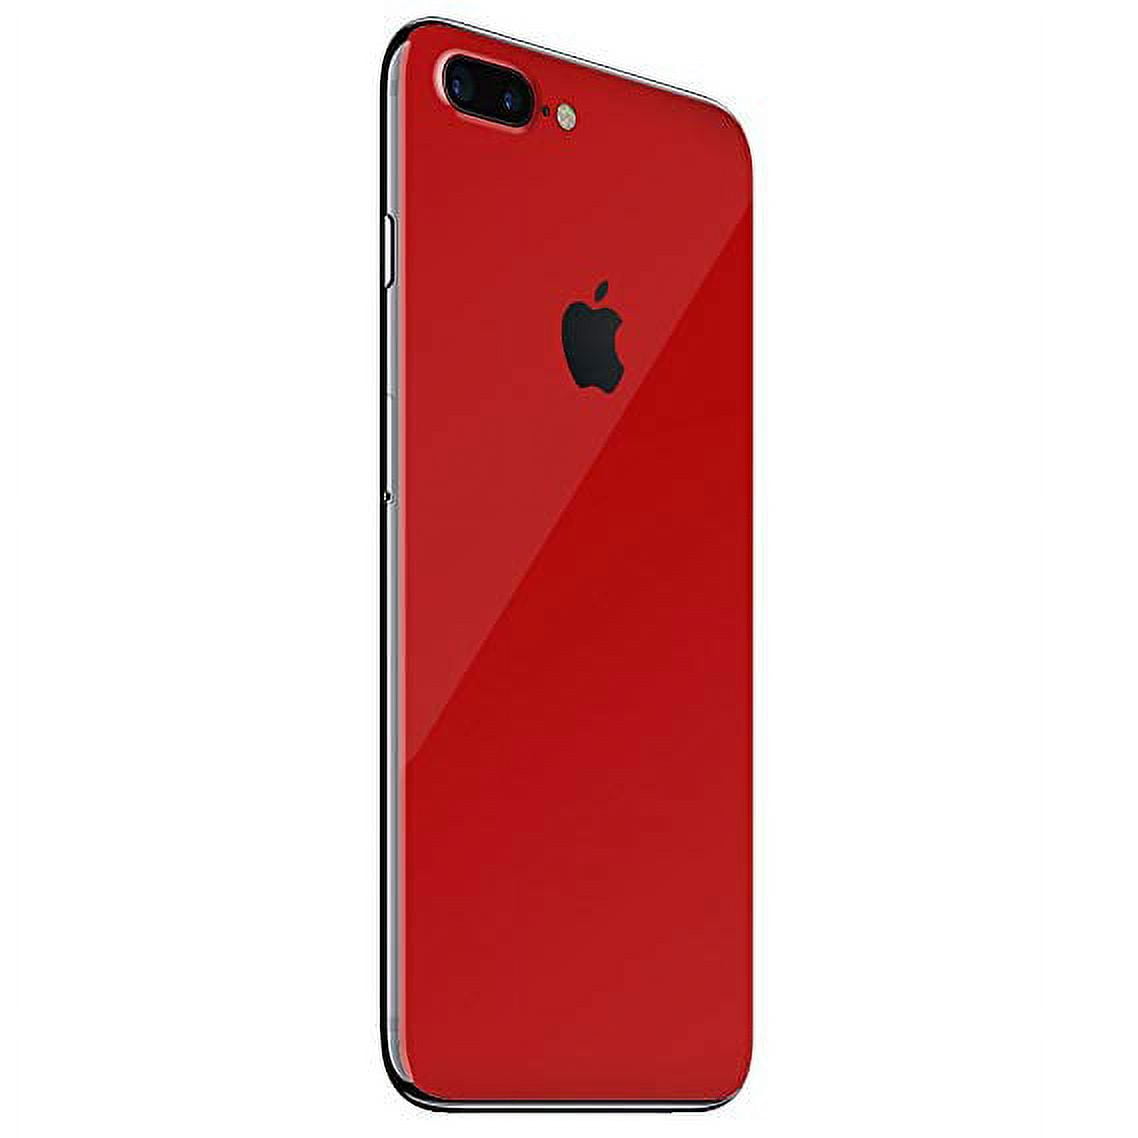 注文【バッテリー新品】Apple iPhone 7 Plus 128GB Red スマートフォン本体